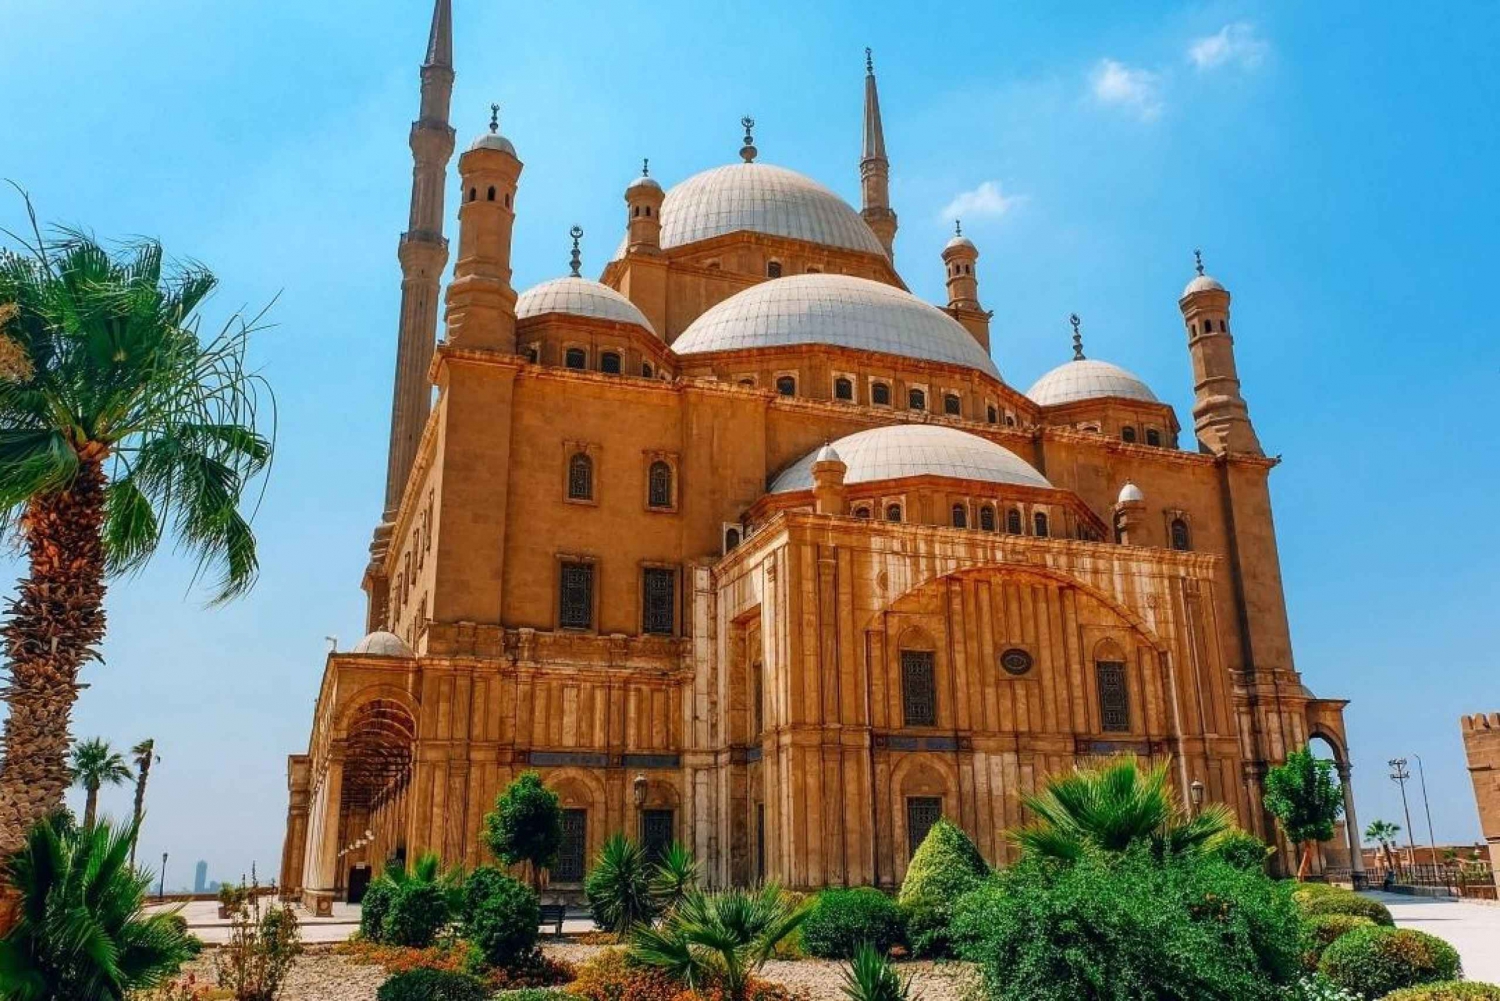 Ciudadela de Salah El Din y Mezquita de Mohamed Ali